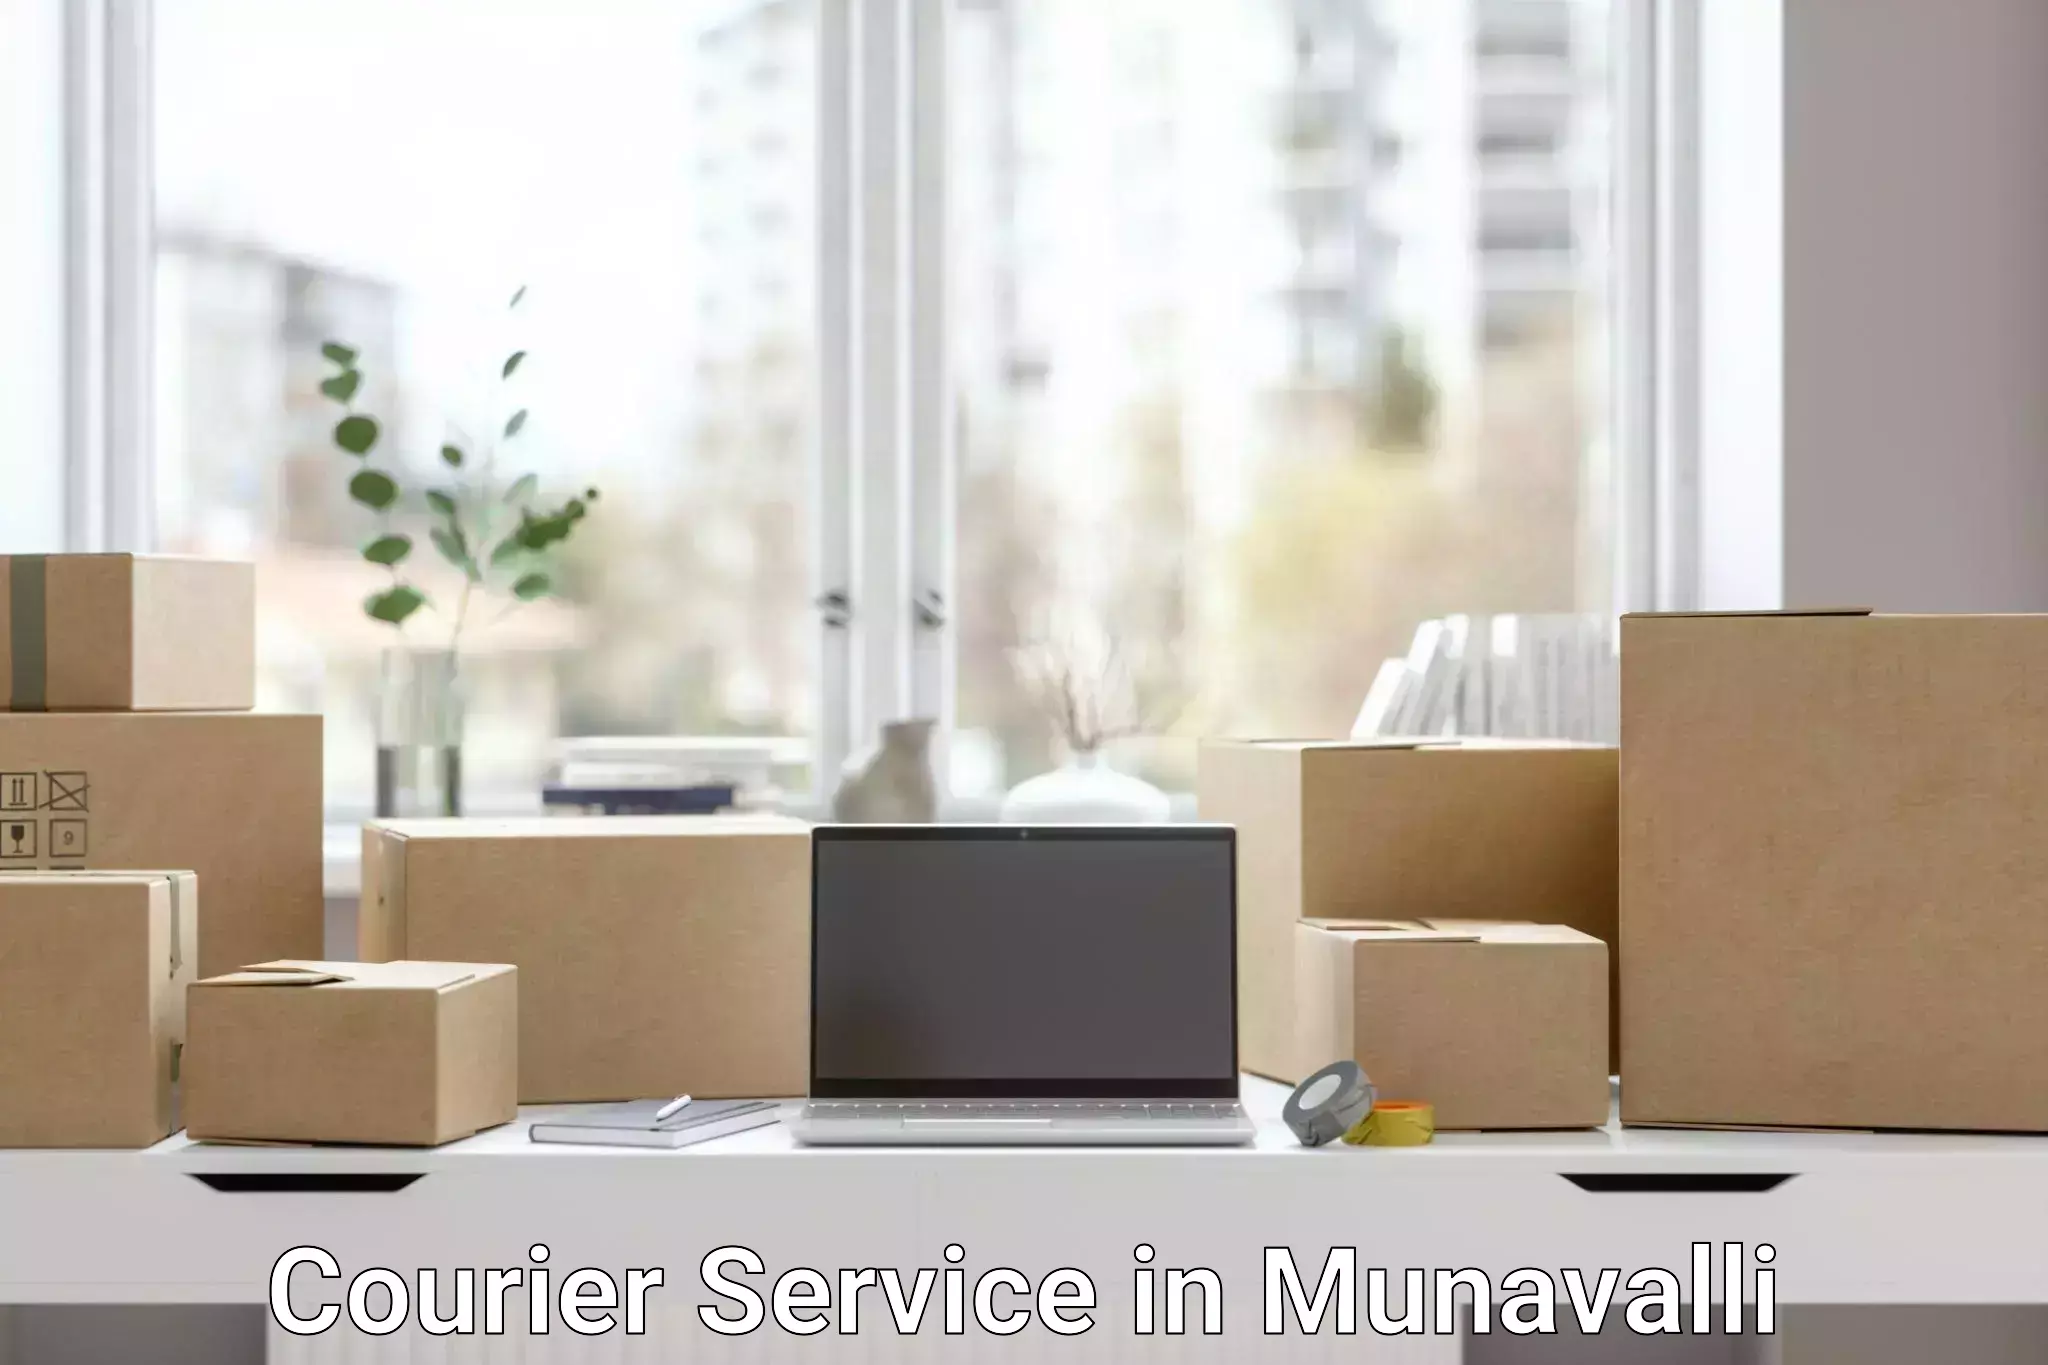 Premium courier services in Munavalli